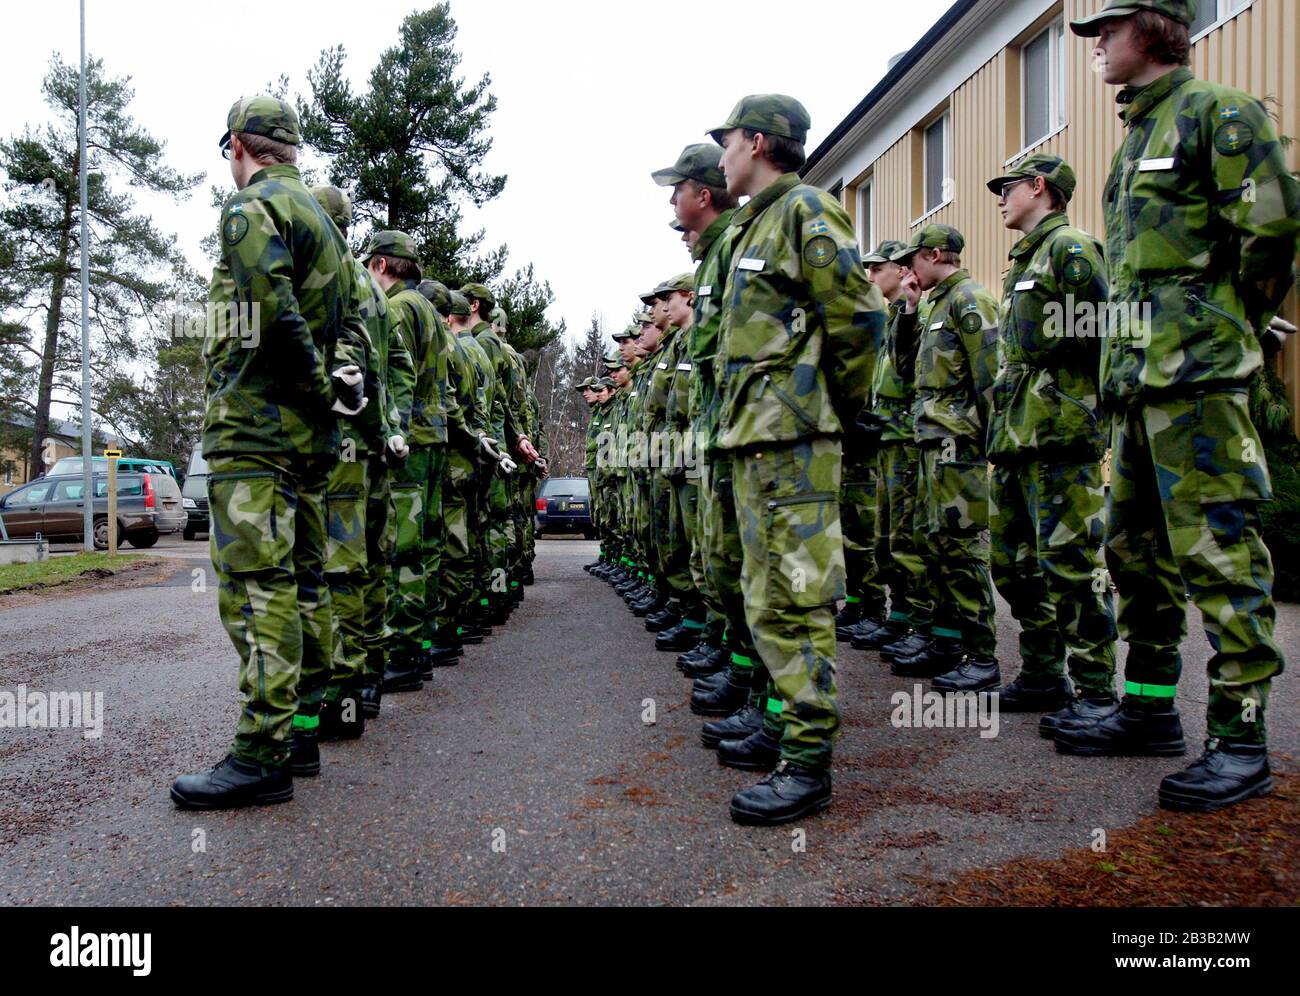 Aufstellung mit konfiskierten Soldaten in der schwedischen Armee, Kvarns Schussweite, Borensberg. Foto Jeppe Gustafsson Stockfoto